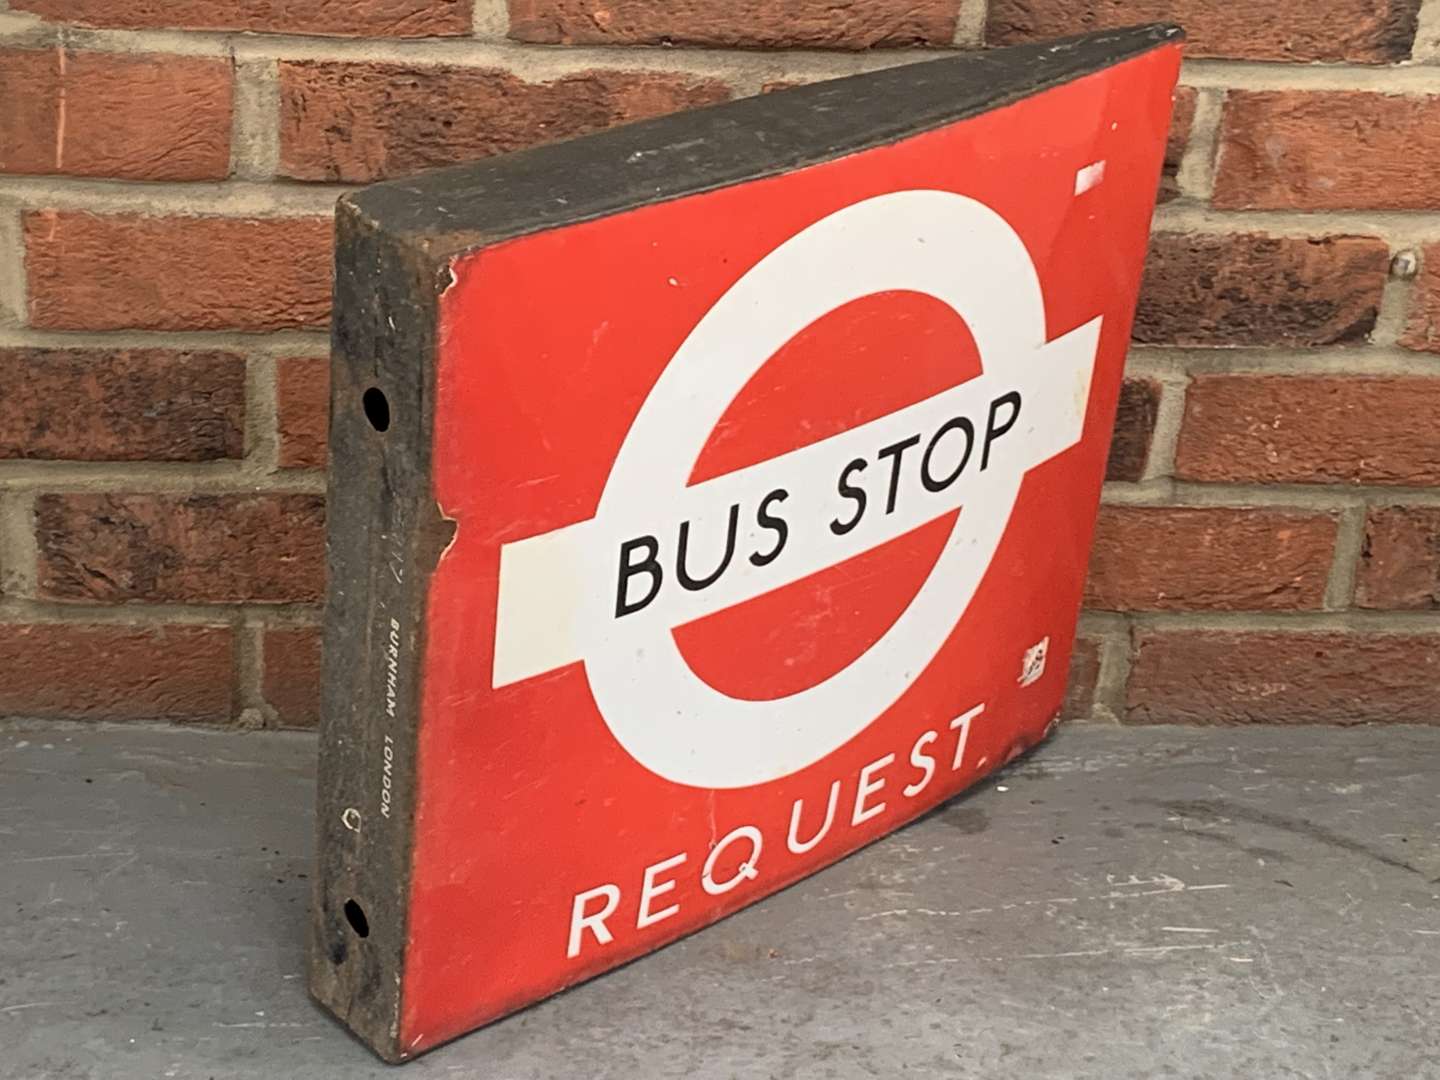 <p>Bus Stop Request Enamel Sign</p>